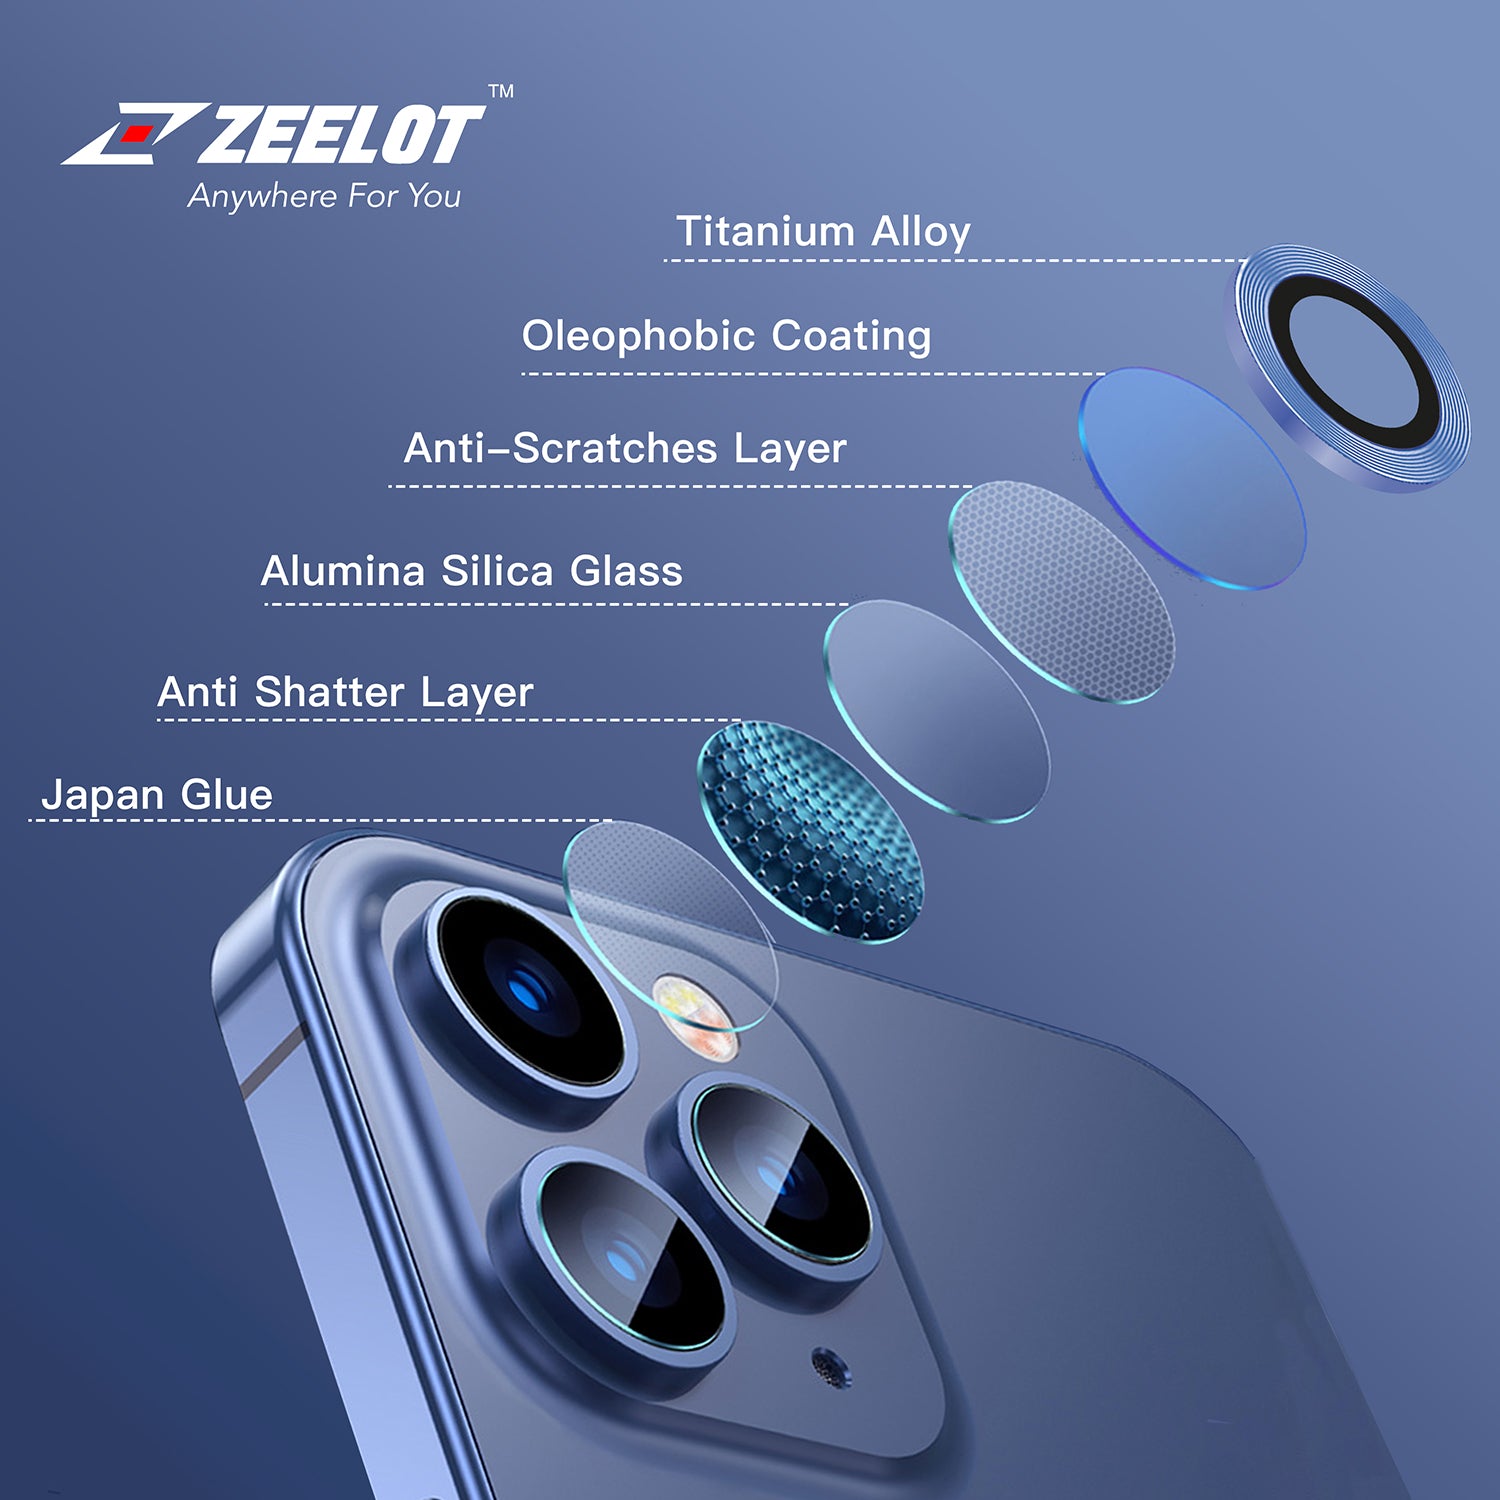 ZEELOT Titanium Steel Lens Protector for iPhone 12 Pro Max 6.7" (Three Cameras), Navy Blue Default ZEELOT 